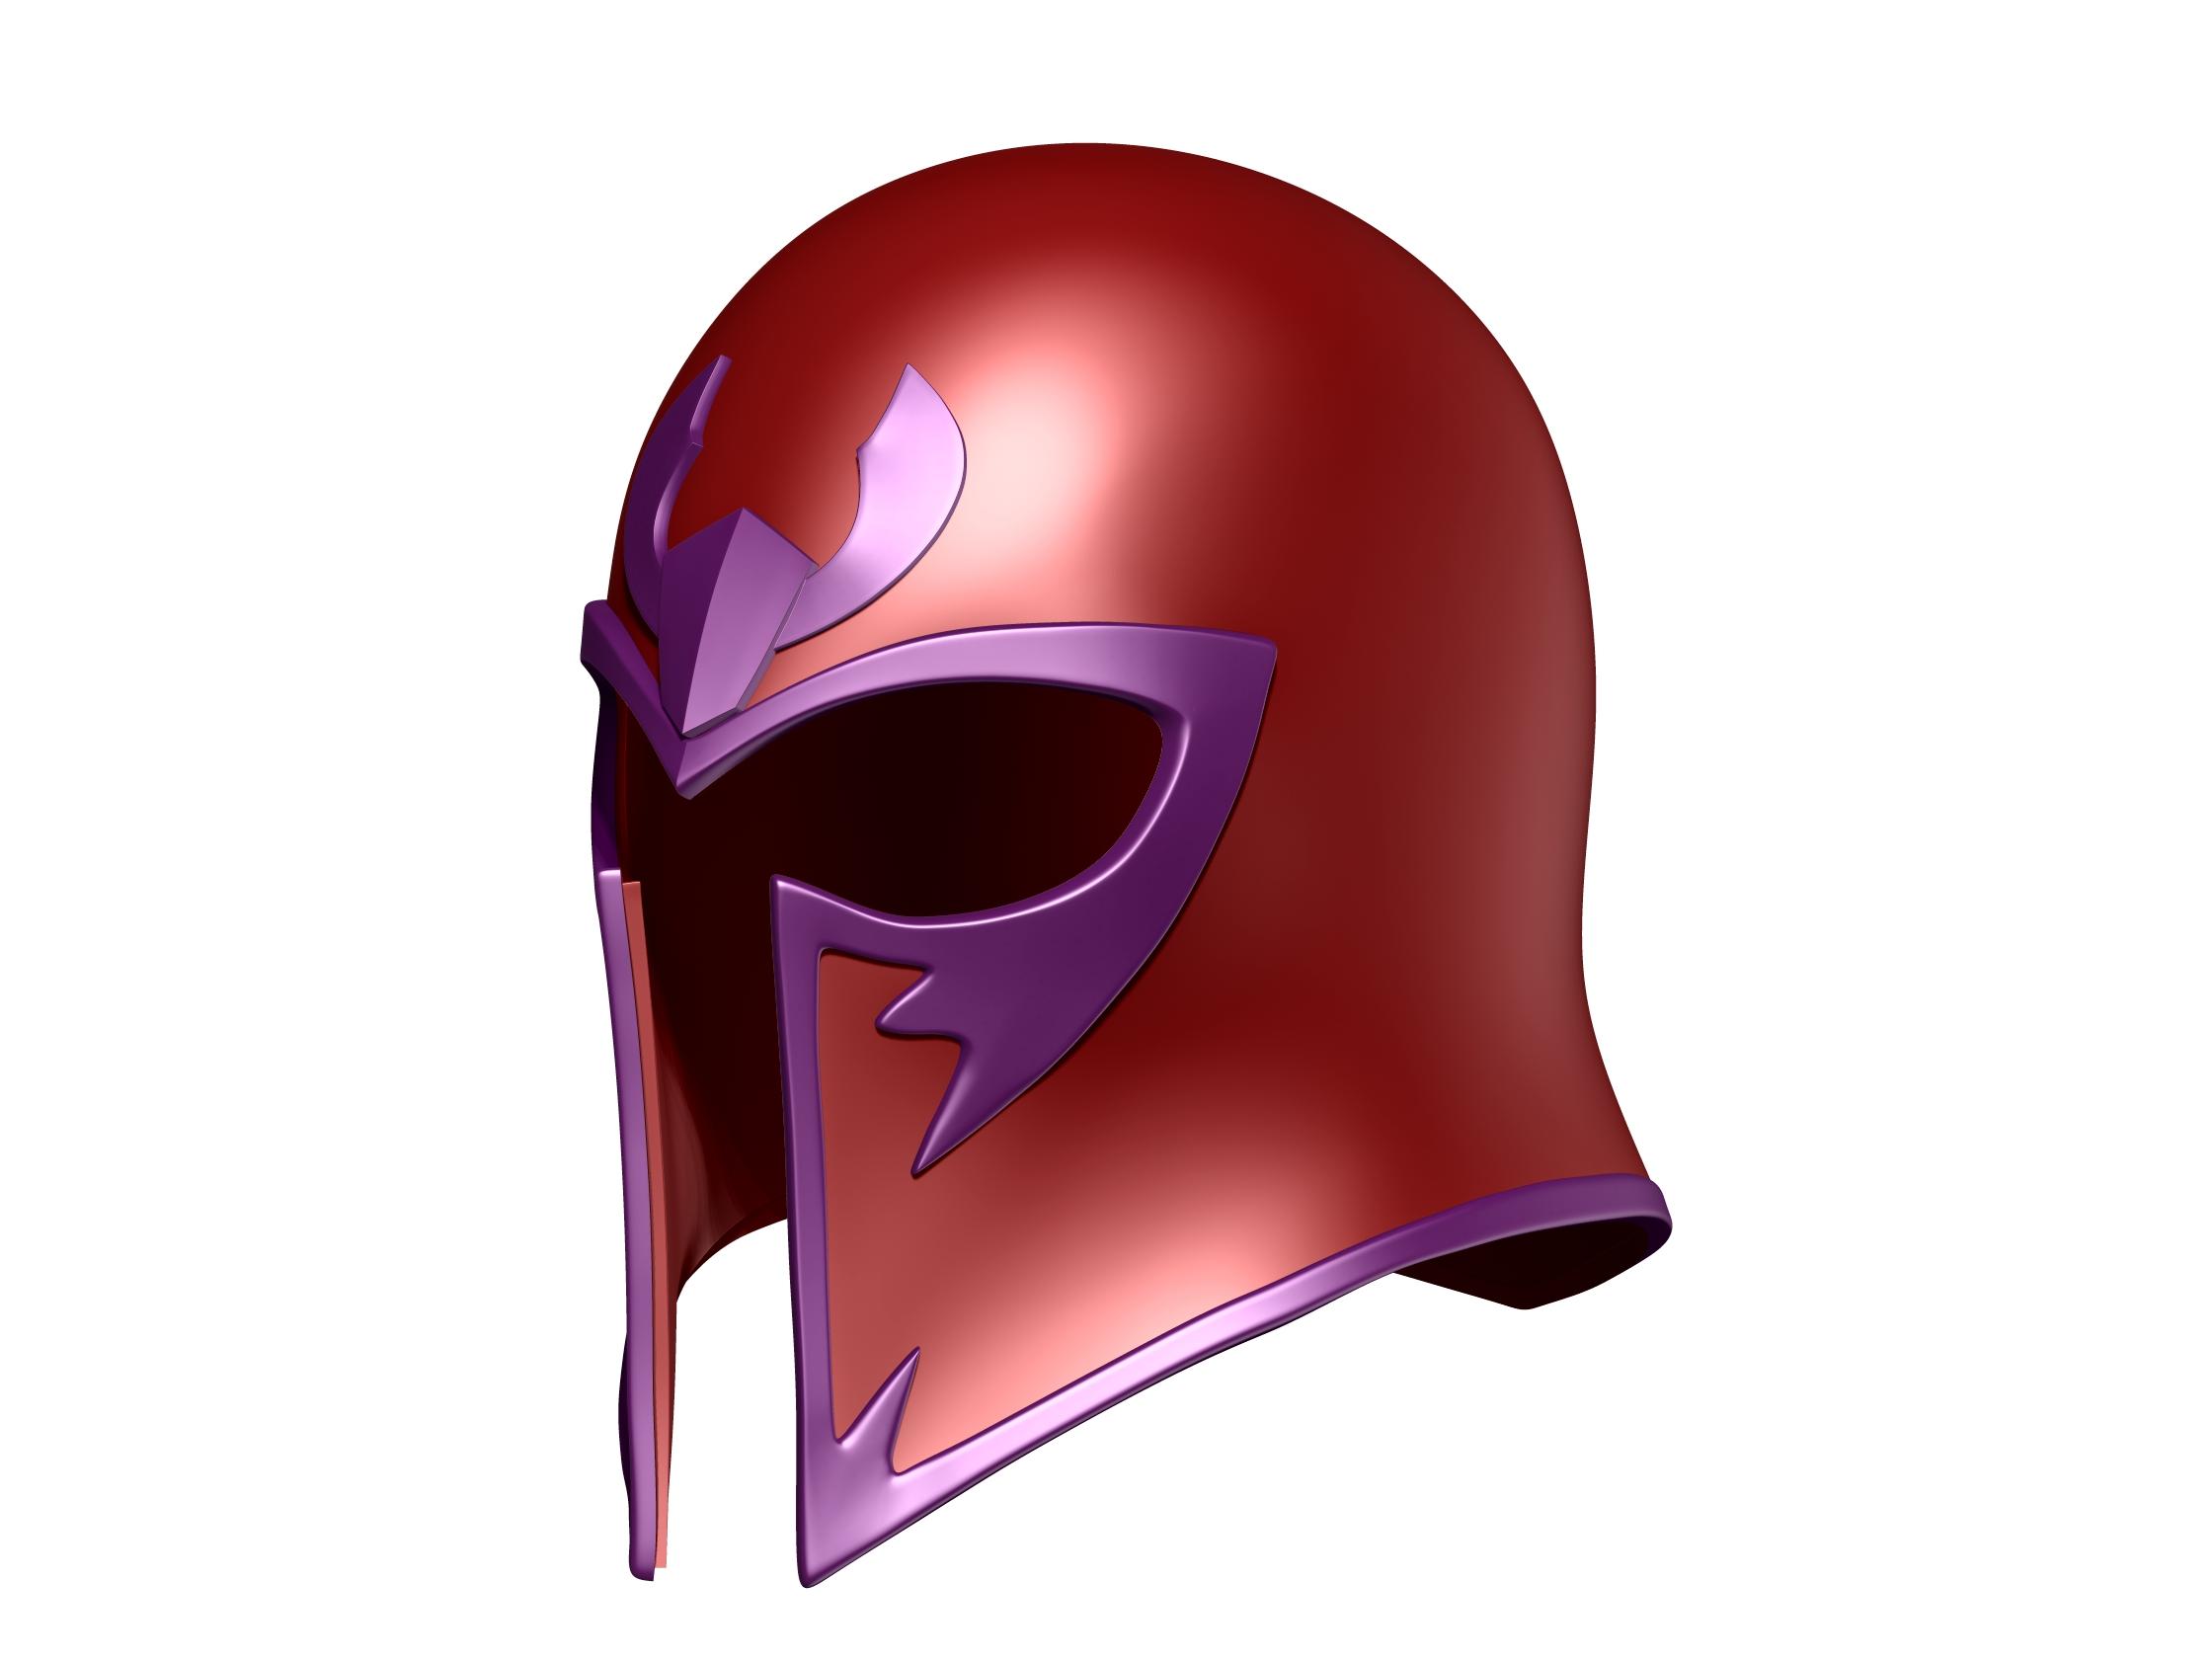 Magneto Helmet 3d model